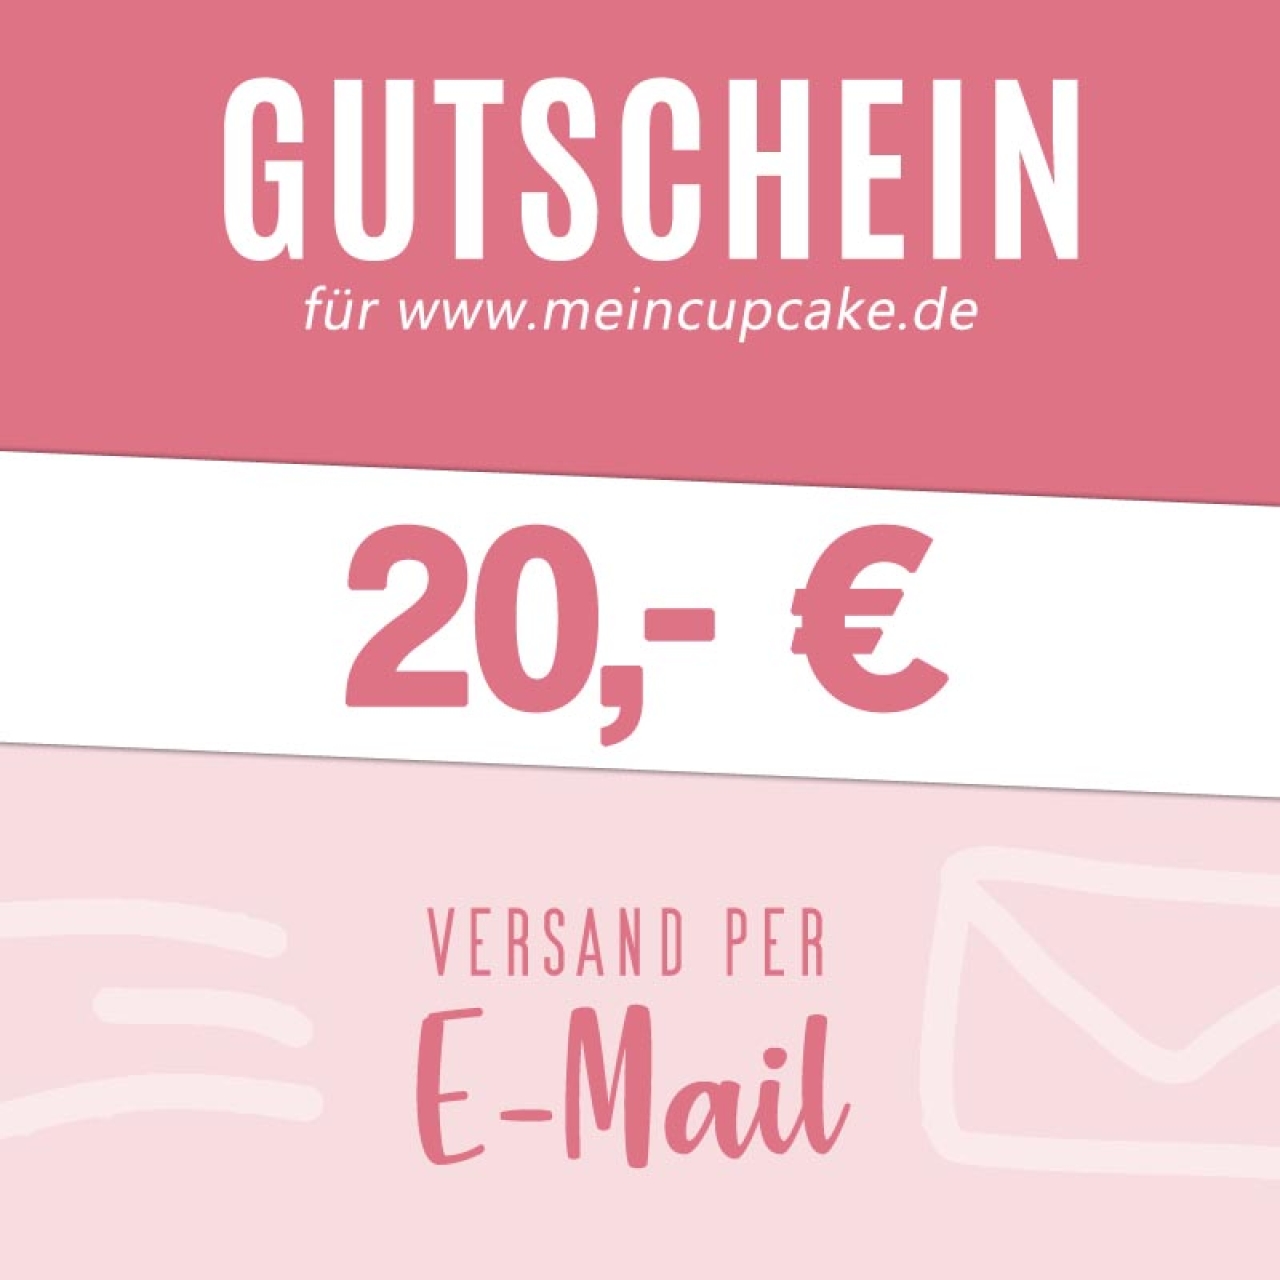 Gutschein 20 EUR als Email für meincupcake.de